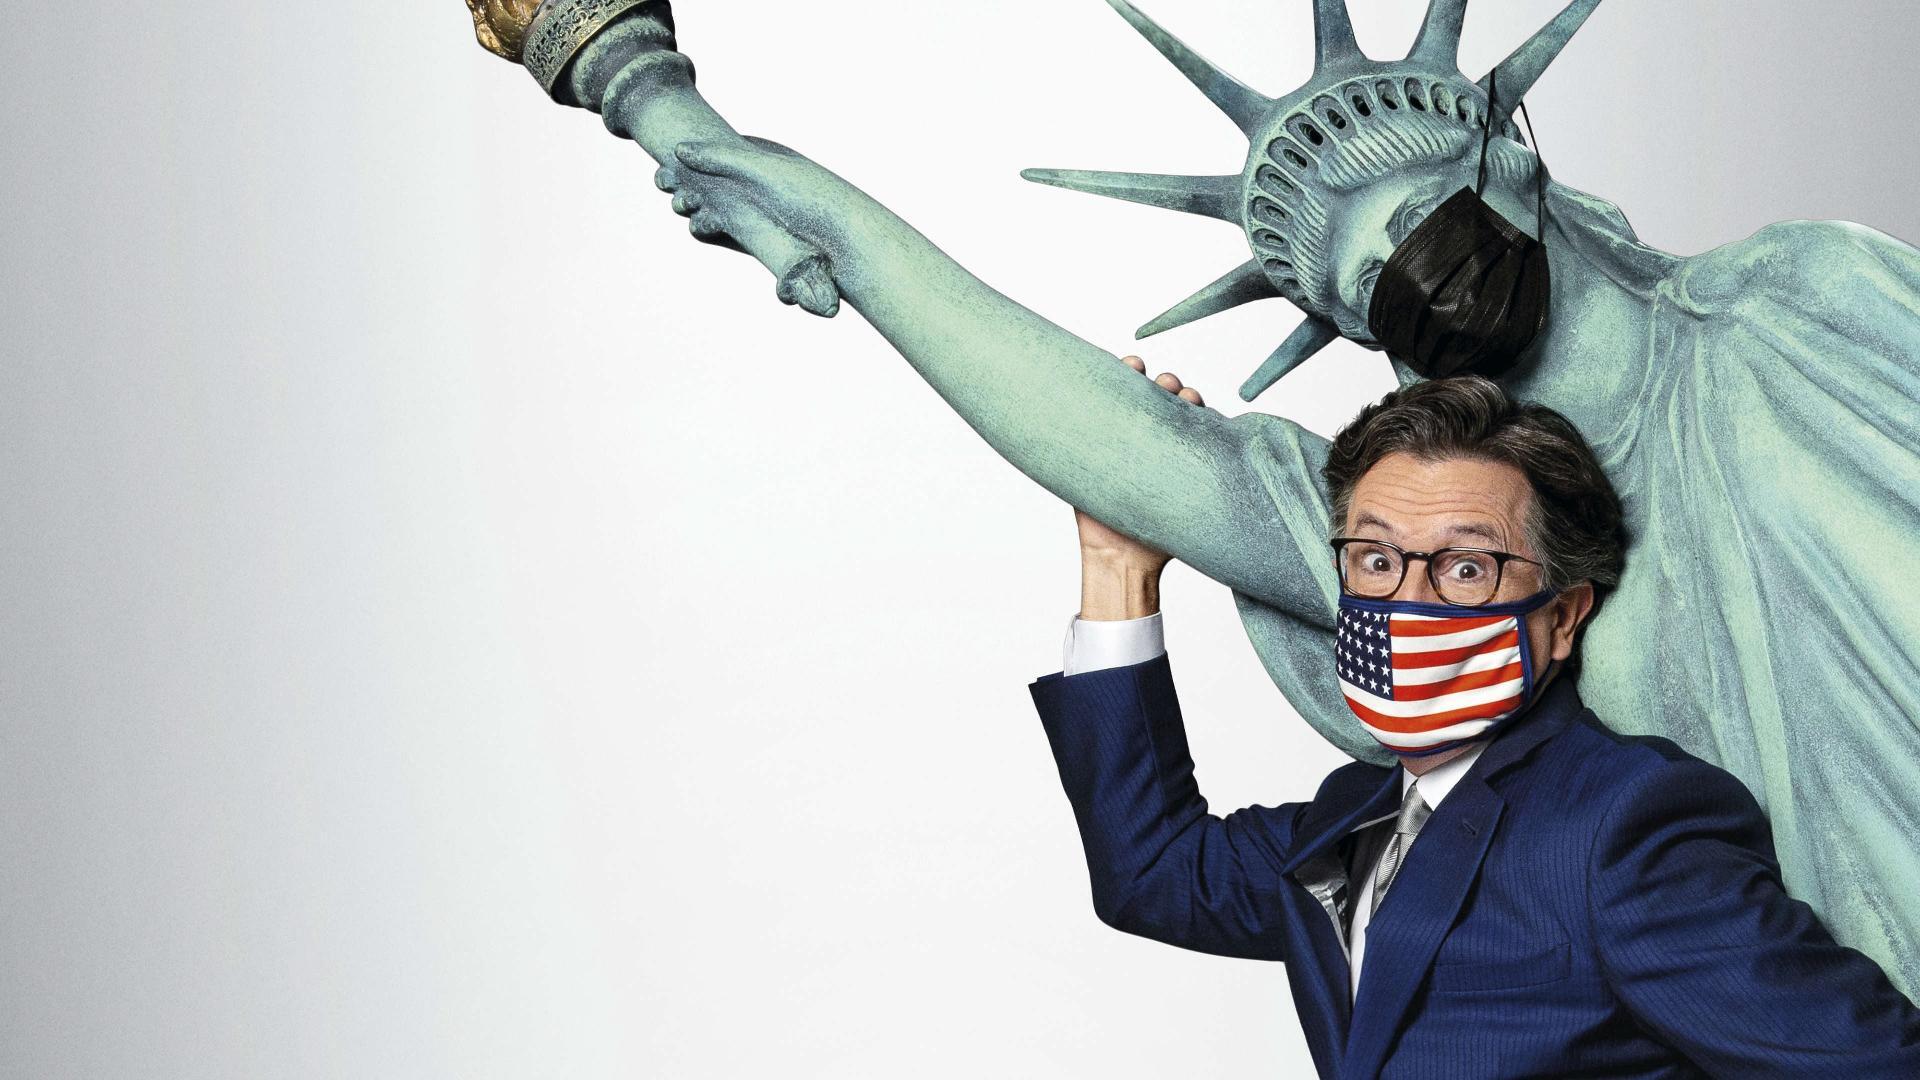 სტივენ კოლბერტსის არჩევნების ღამე 2020: დემოკრატიის ბოლო ძალა: ხელახლა ავაშენოთ ამერიკა / Stephen Colbert's Election Night 2020: Democracy's Last Stand: Building Back America Great Again Better 2020